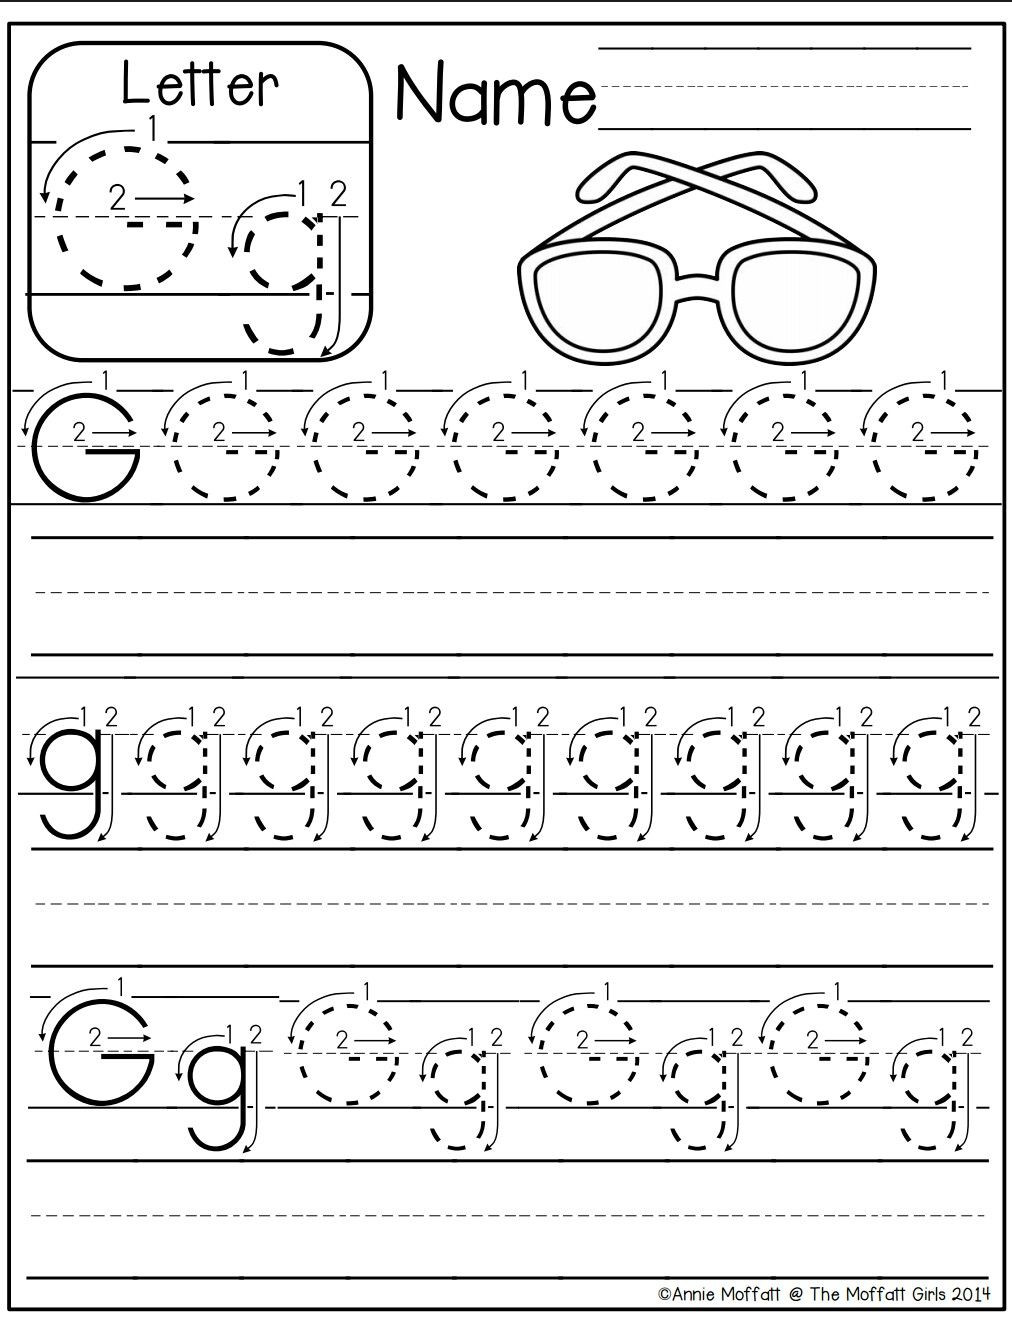 Preschool Letter G Worksheets Letter G Worksheet